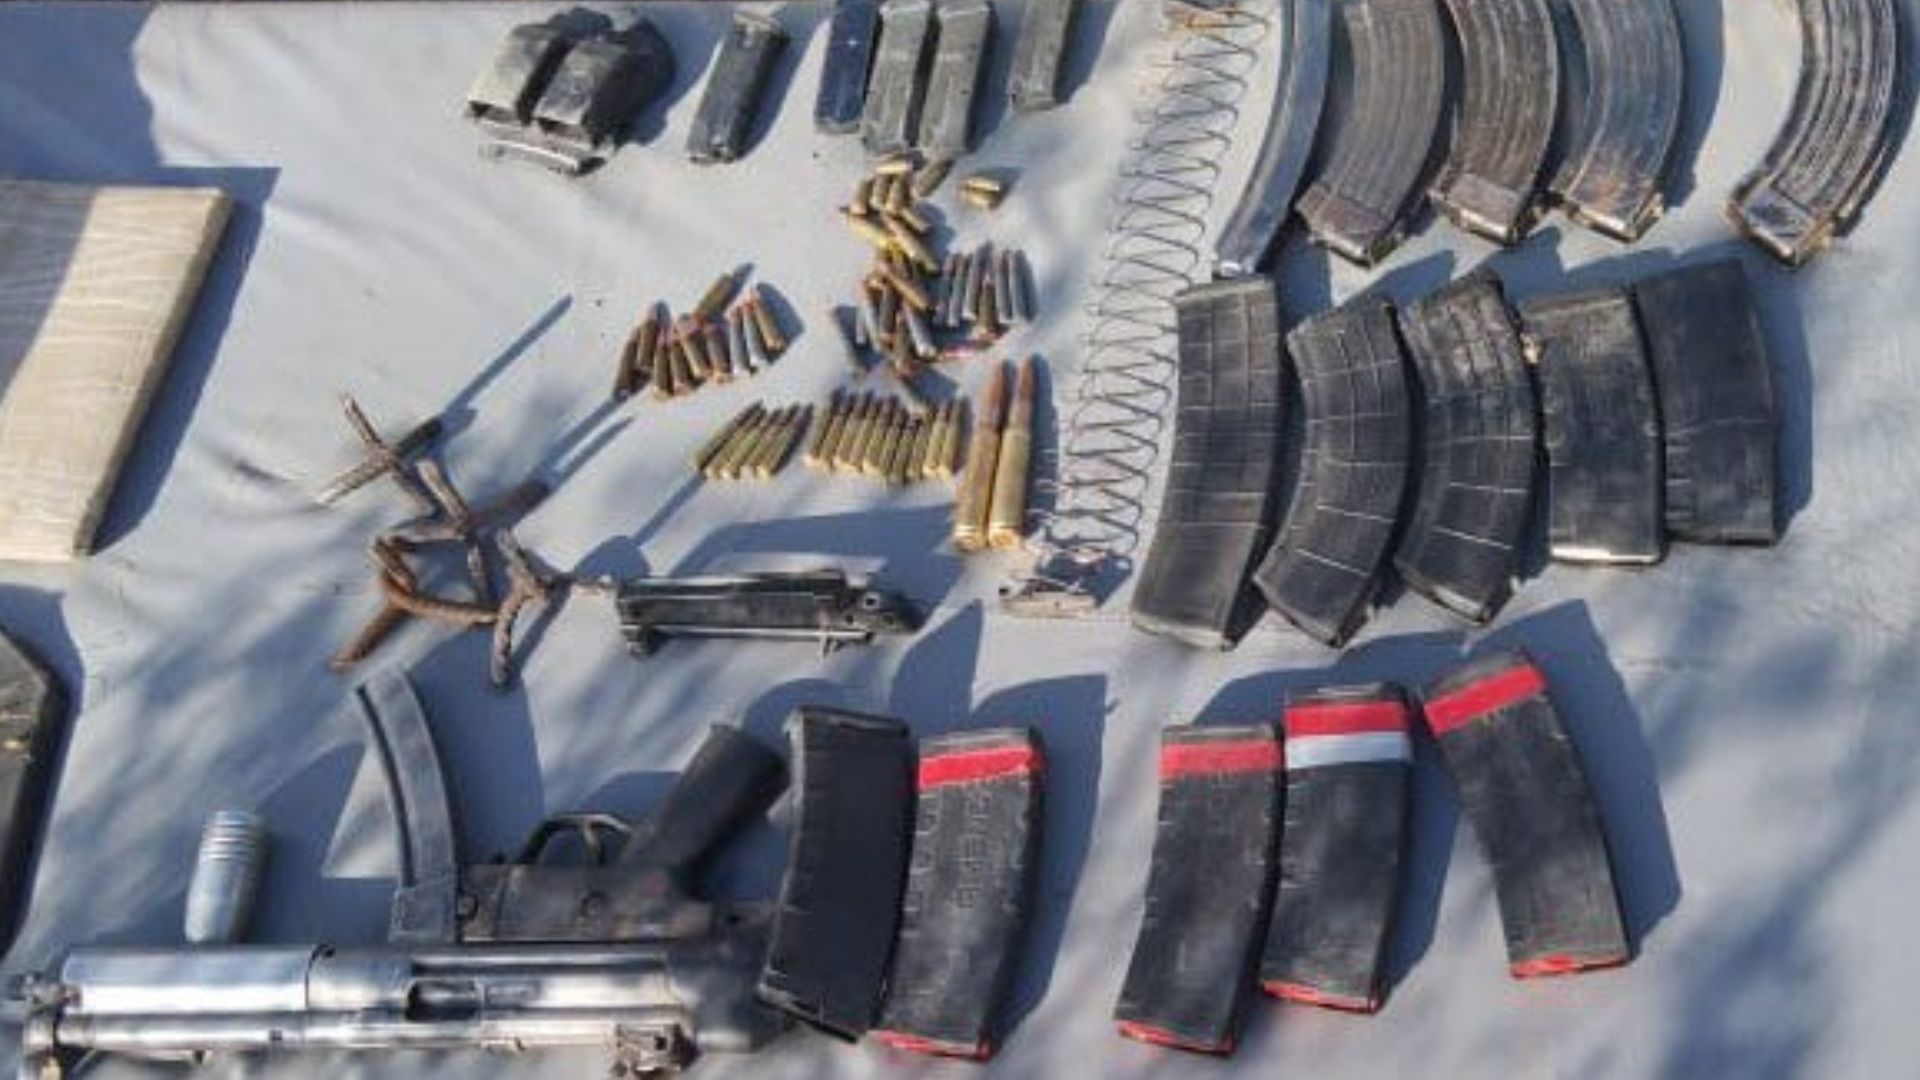 Ejército Mexicano y Guardia Nacional decomisaron material bélico dentro de cuatro vehículos en Sonora 